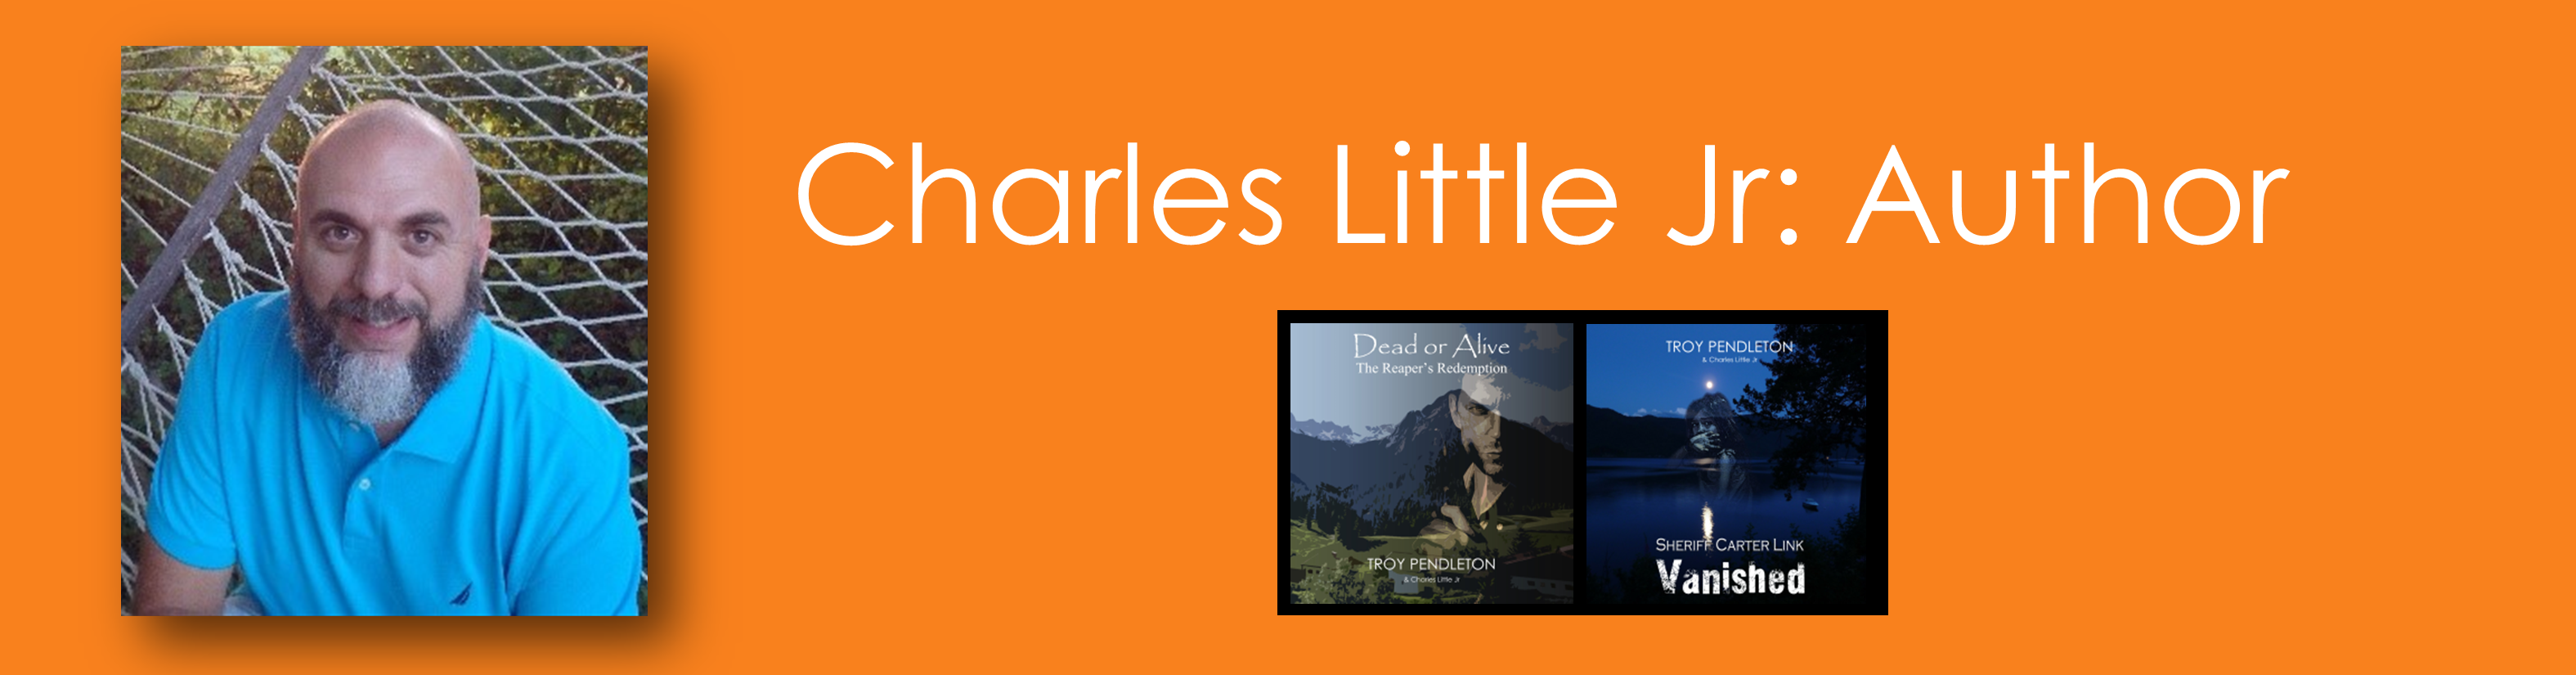 Author Charles Little Jr Slide